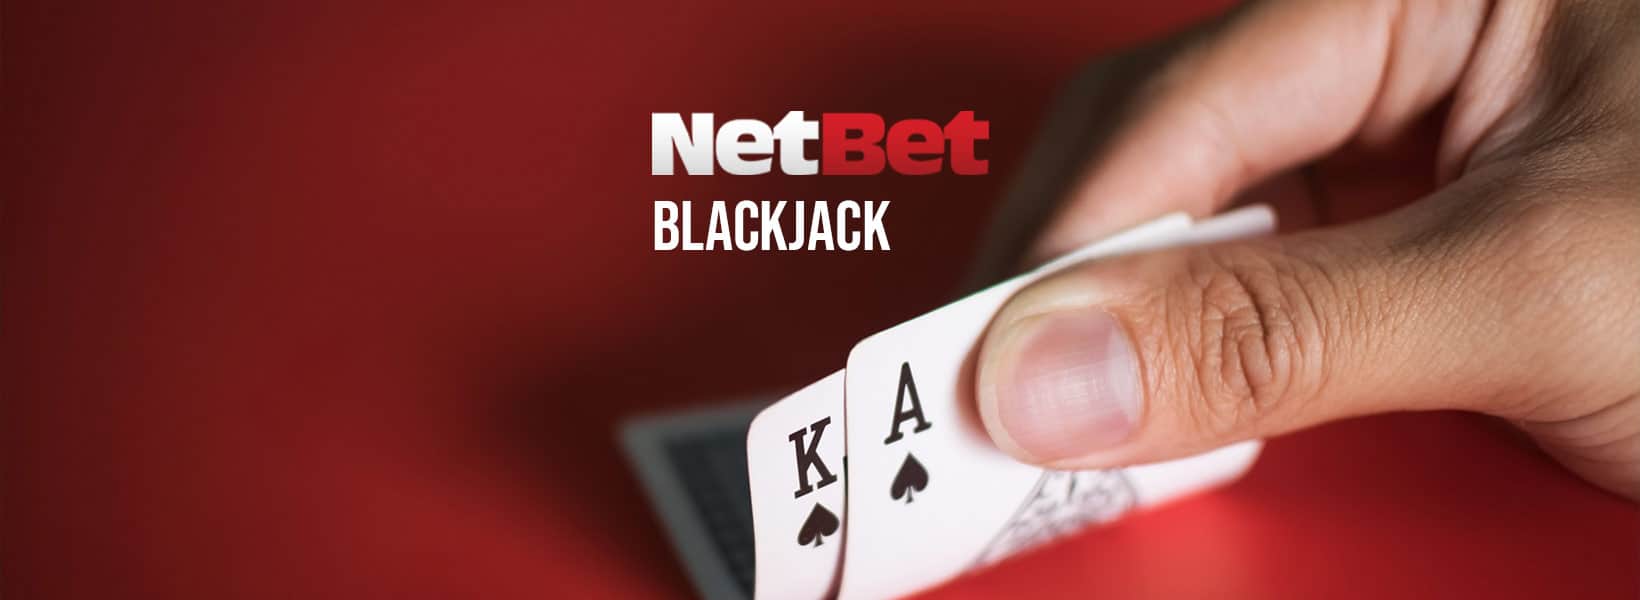 blackjack netbet